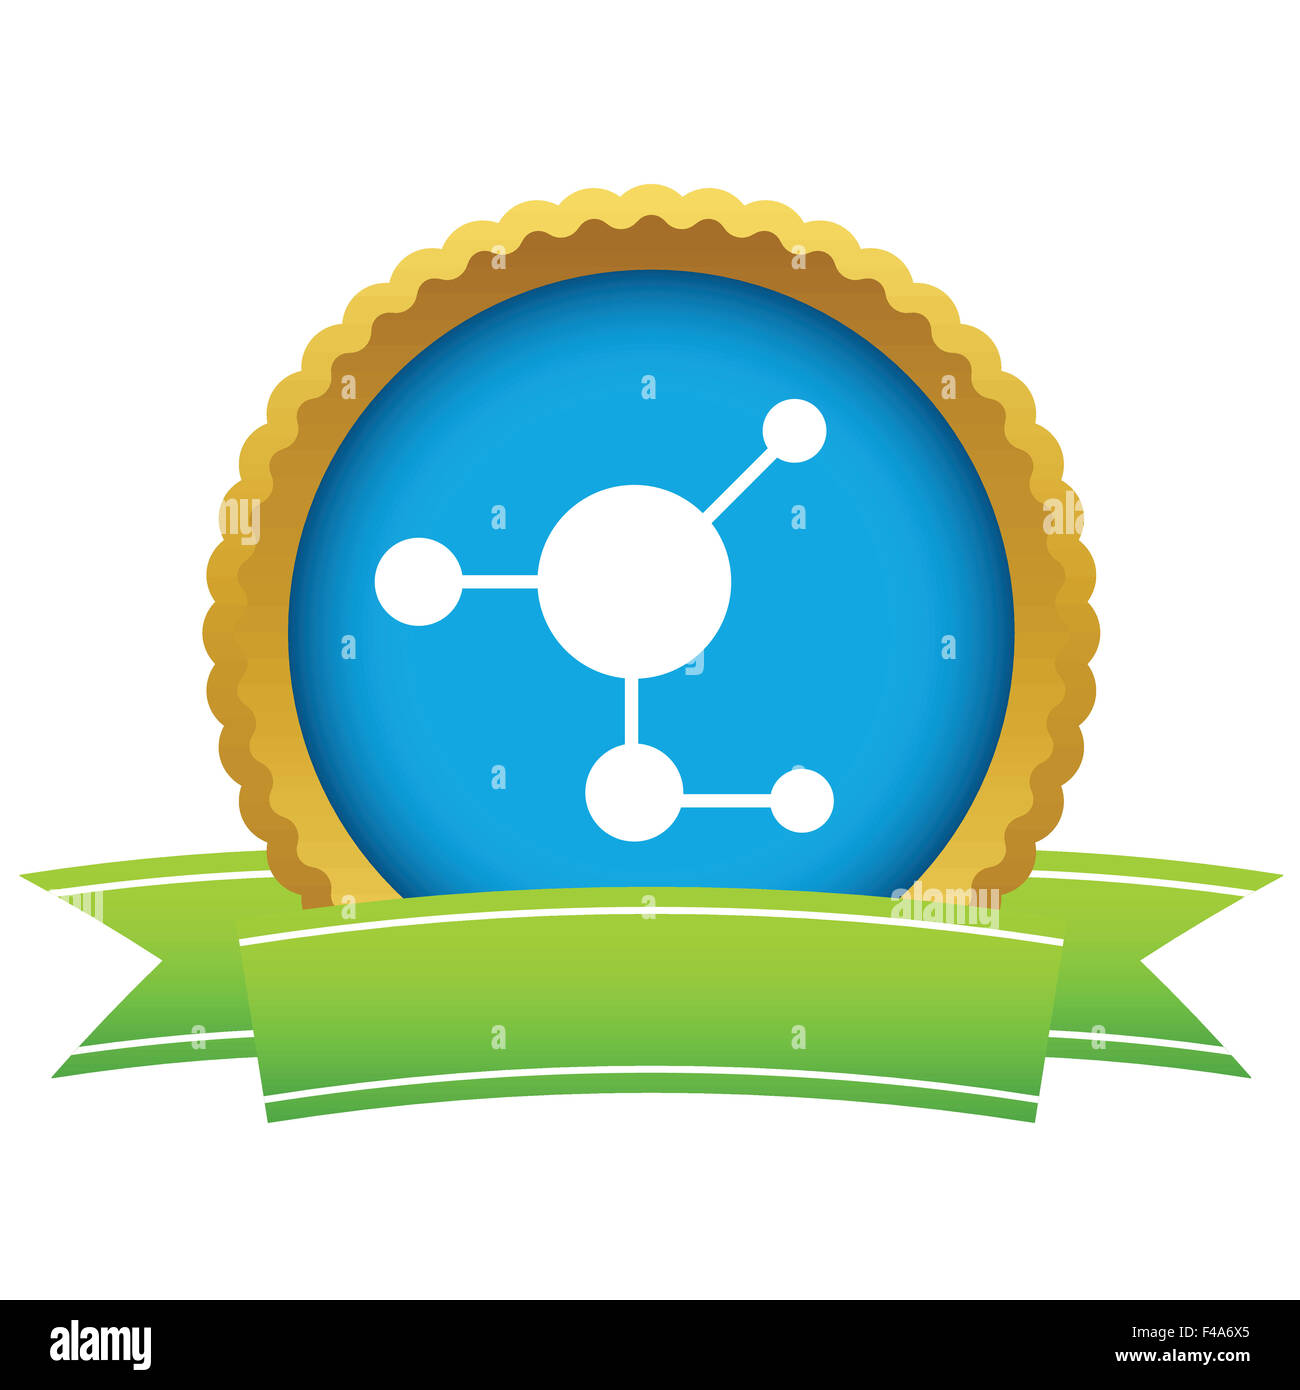 Gold atom logo Stock Photo